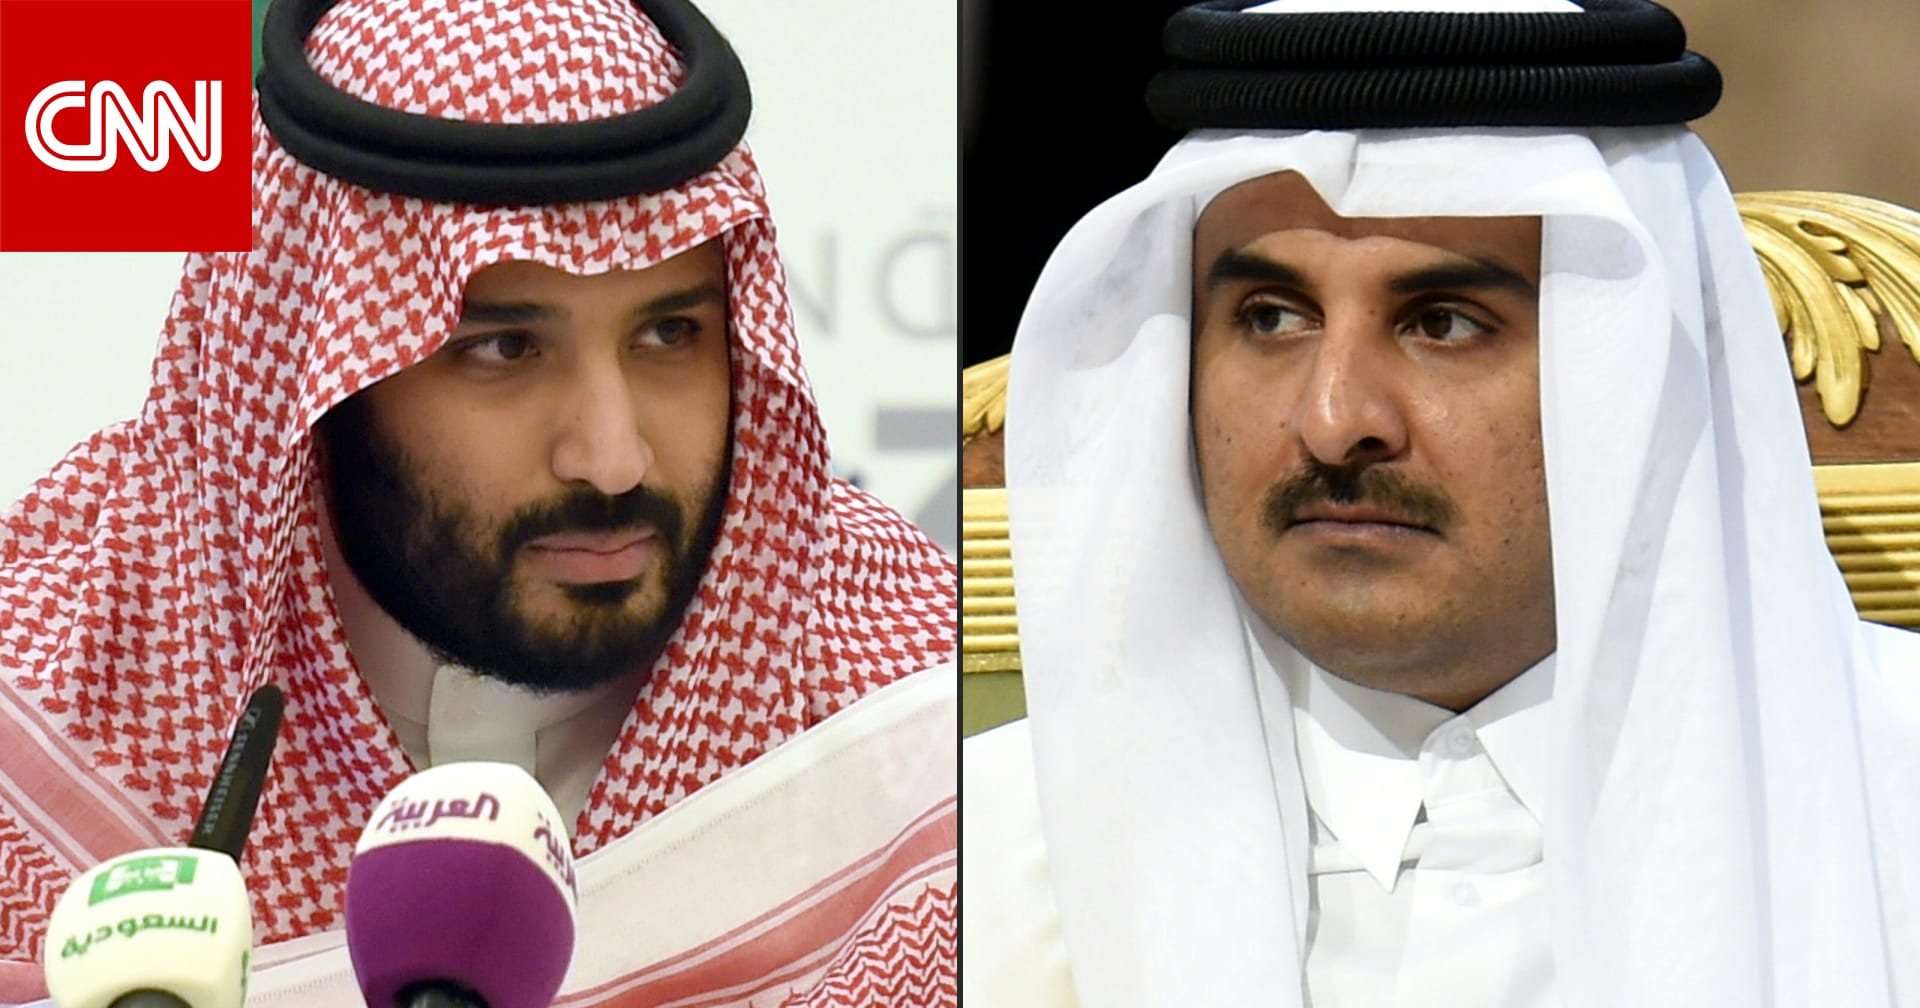 بعد هجوم قطر.. السعودية ترد على  استهداف ولي العهد  وتهاجم إيران وتركيا و القابع في الجزيرة القريبة  